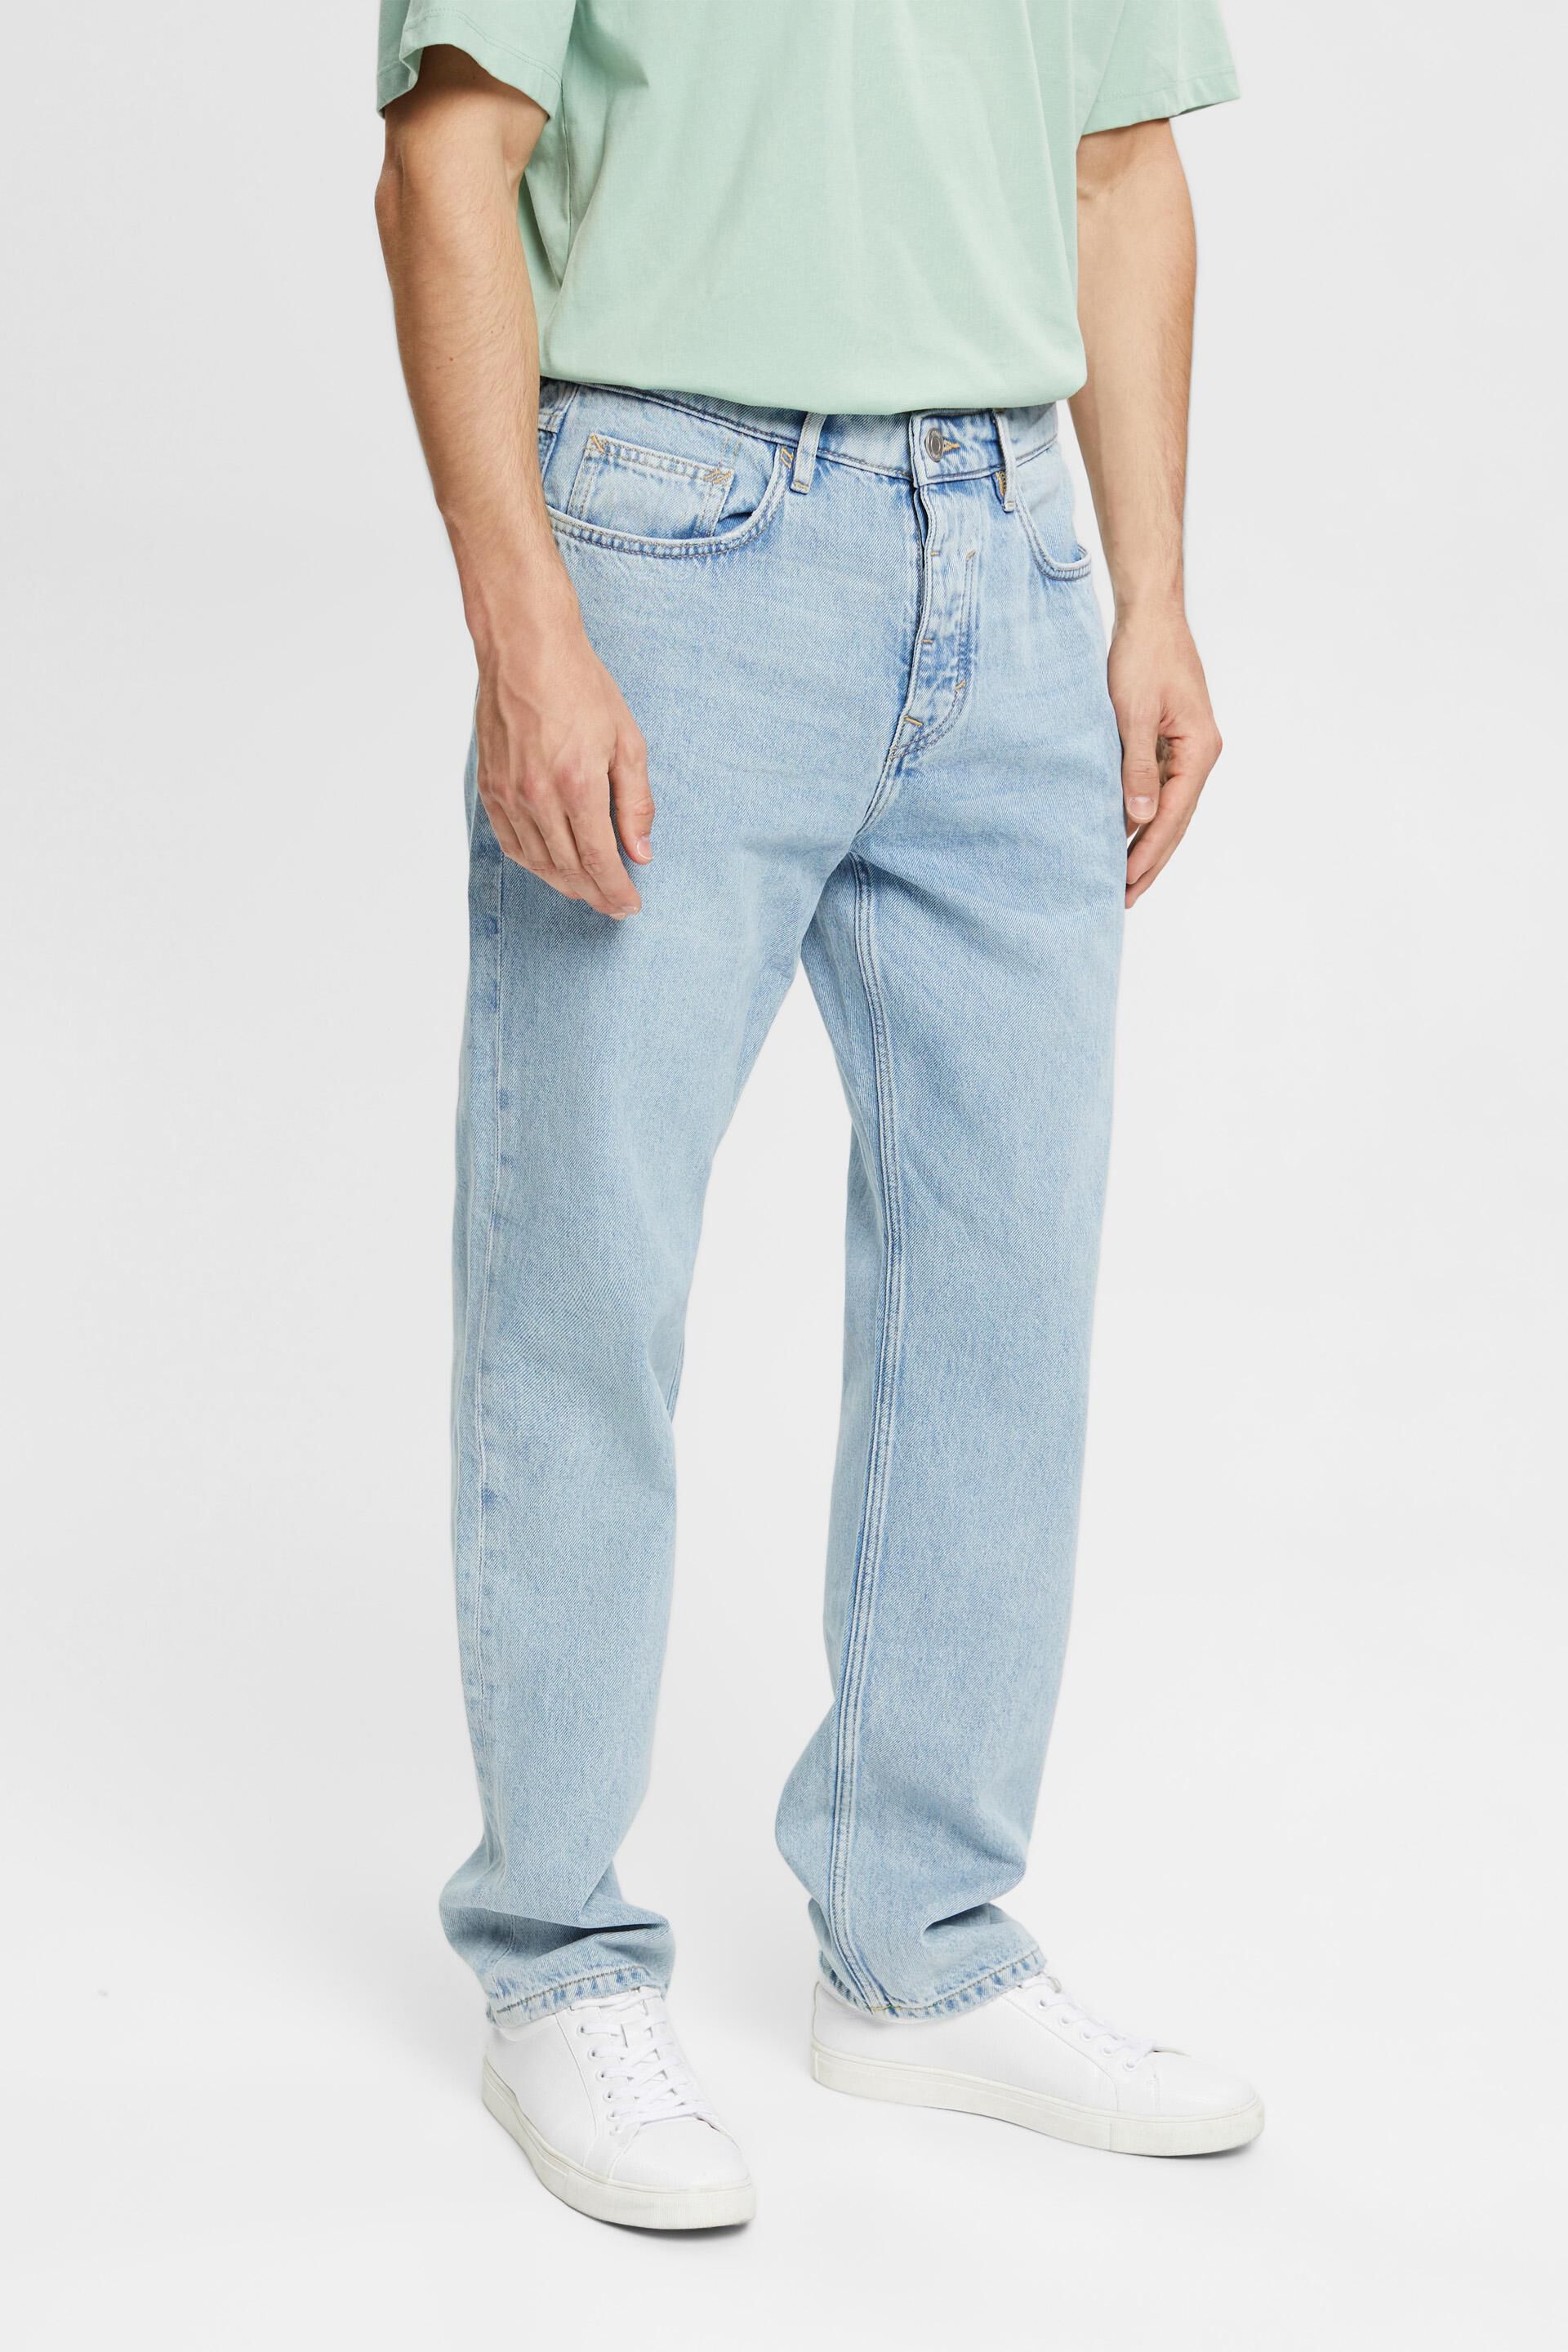 Joe\u2019s jeans Jeans met rechte pijpen donkerblauw Jeans-look Mode Spijkerbroeken Jeans met rechte pijpen Joe’s jeans